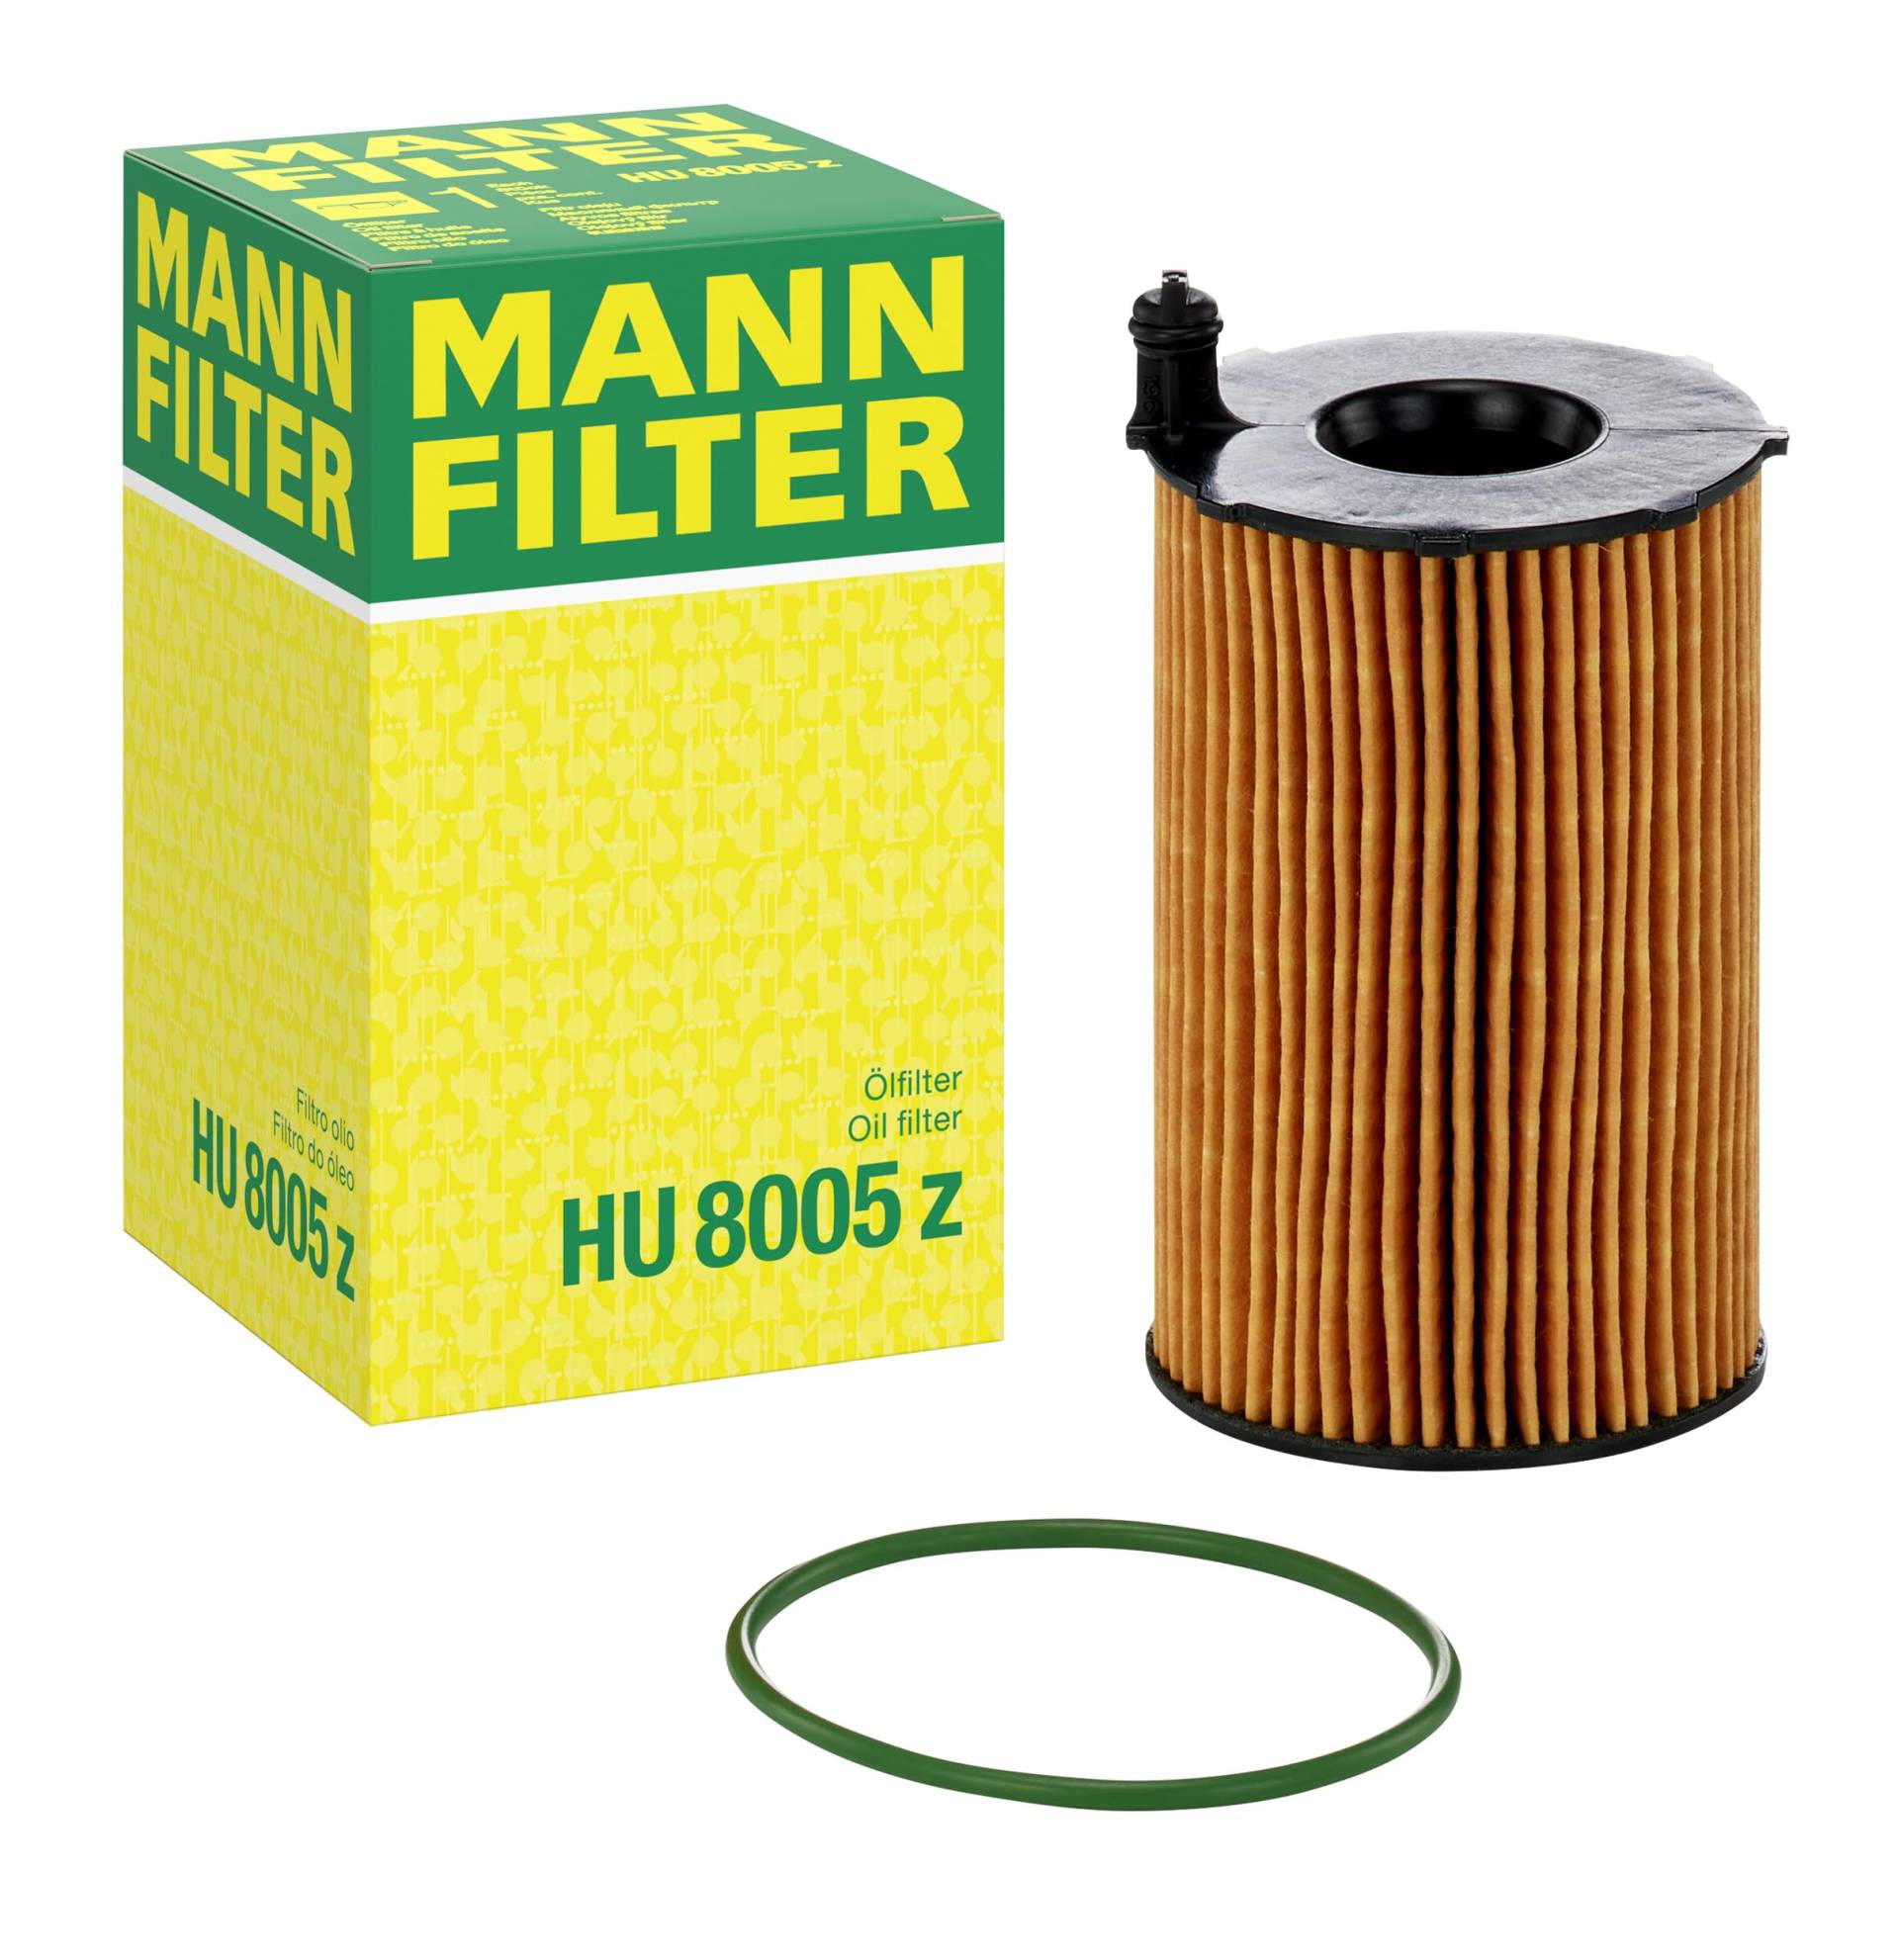 MANN-FILTER HU 8005 Z Ölfilter – Ölfilter Satz mit Dichtung/Dichtungssatz – Für PKW von MANN-FILTER